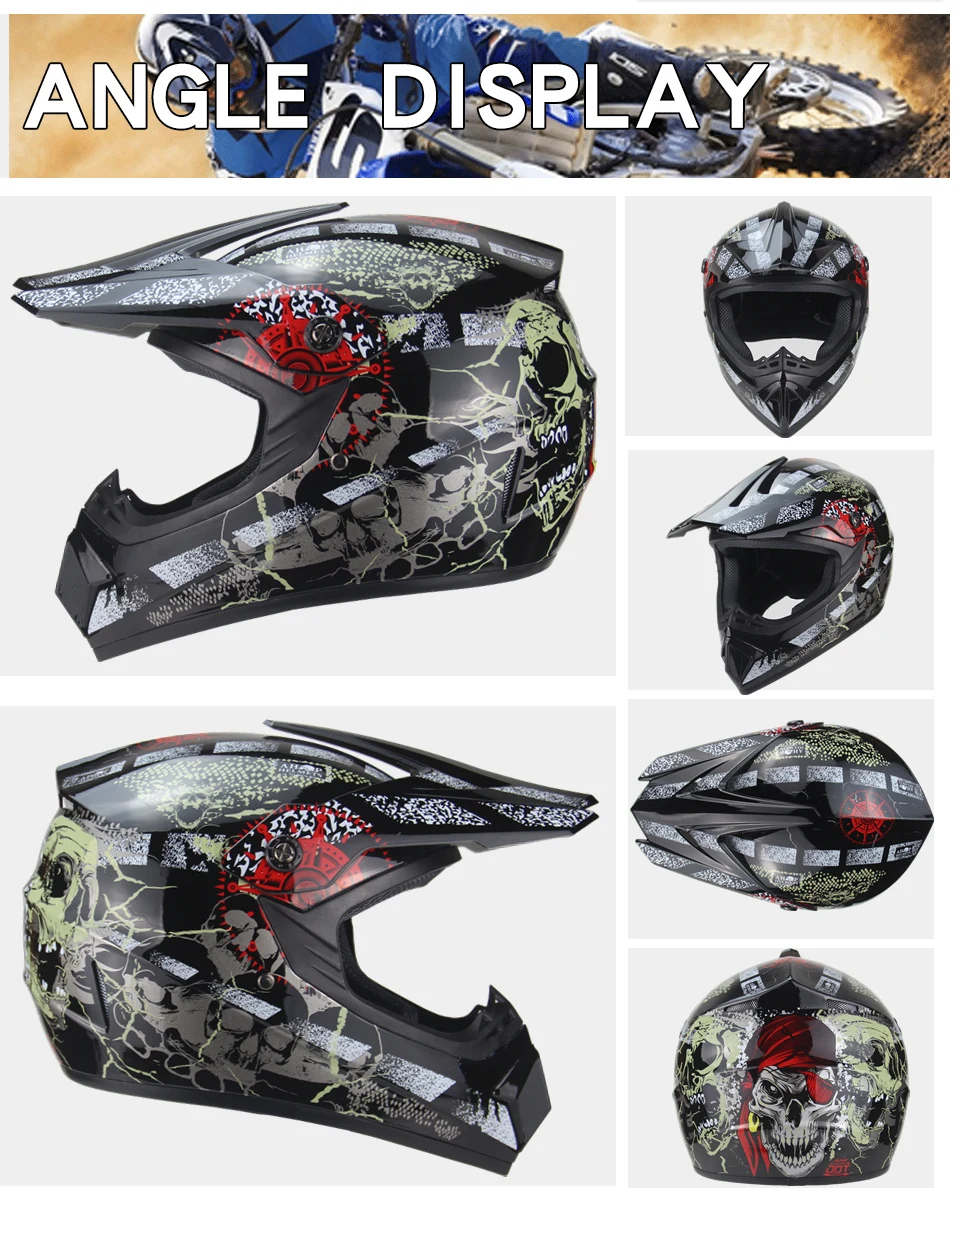 Мотоциклетный шлем для взрослых, для мотокросса, для внедорожника, для езды на велосипеде, для горного велосипеда, для горного велосипеда, DH, гоночный шлем, кросс-шлем, apacetes